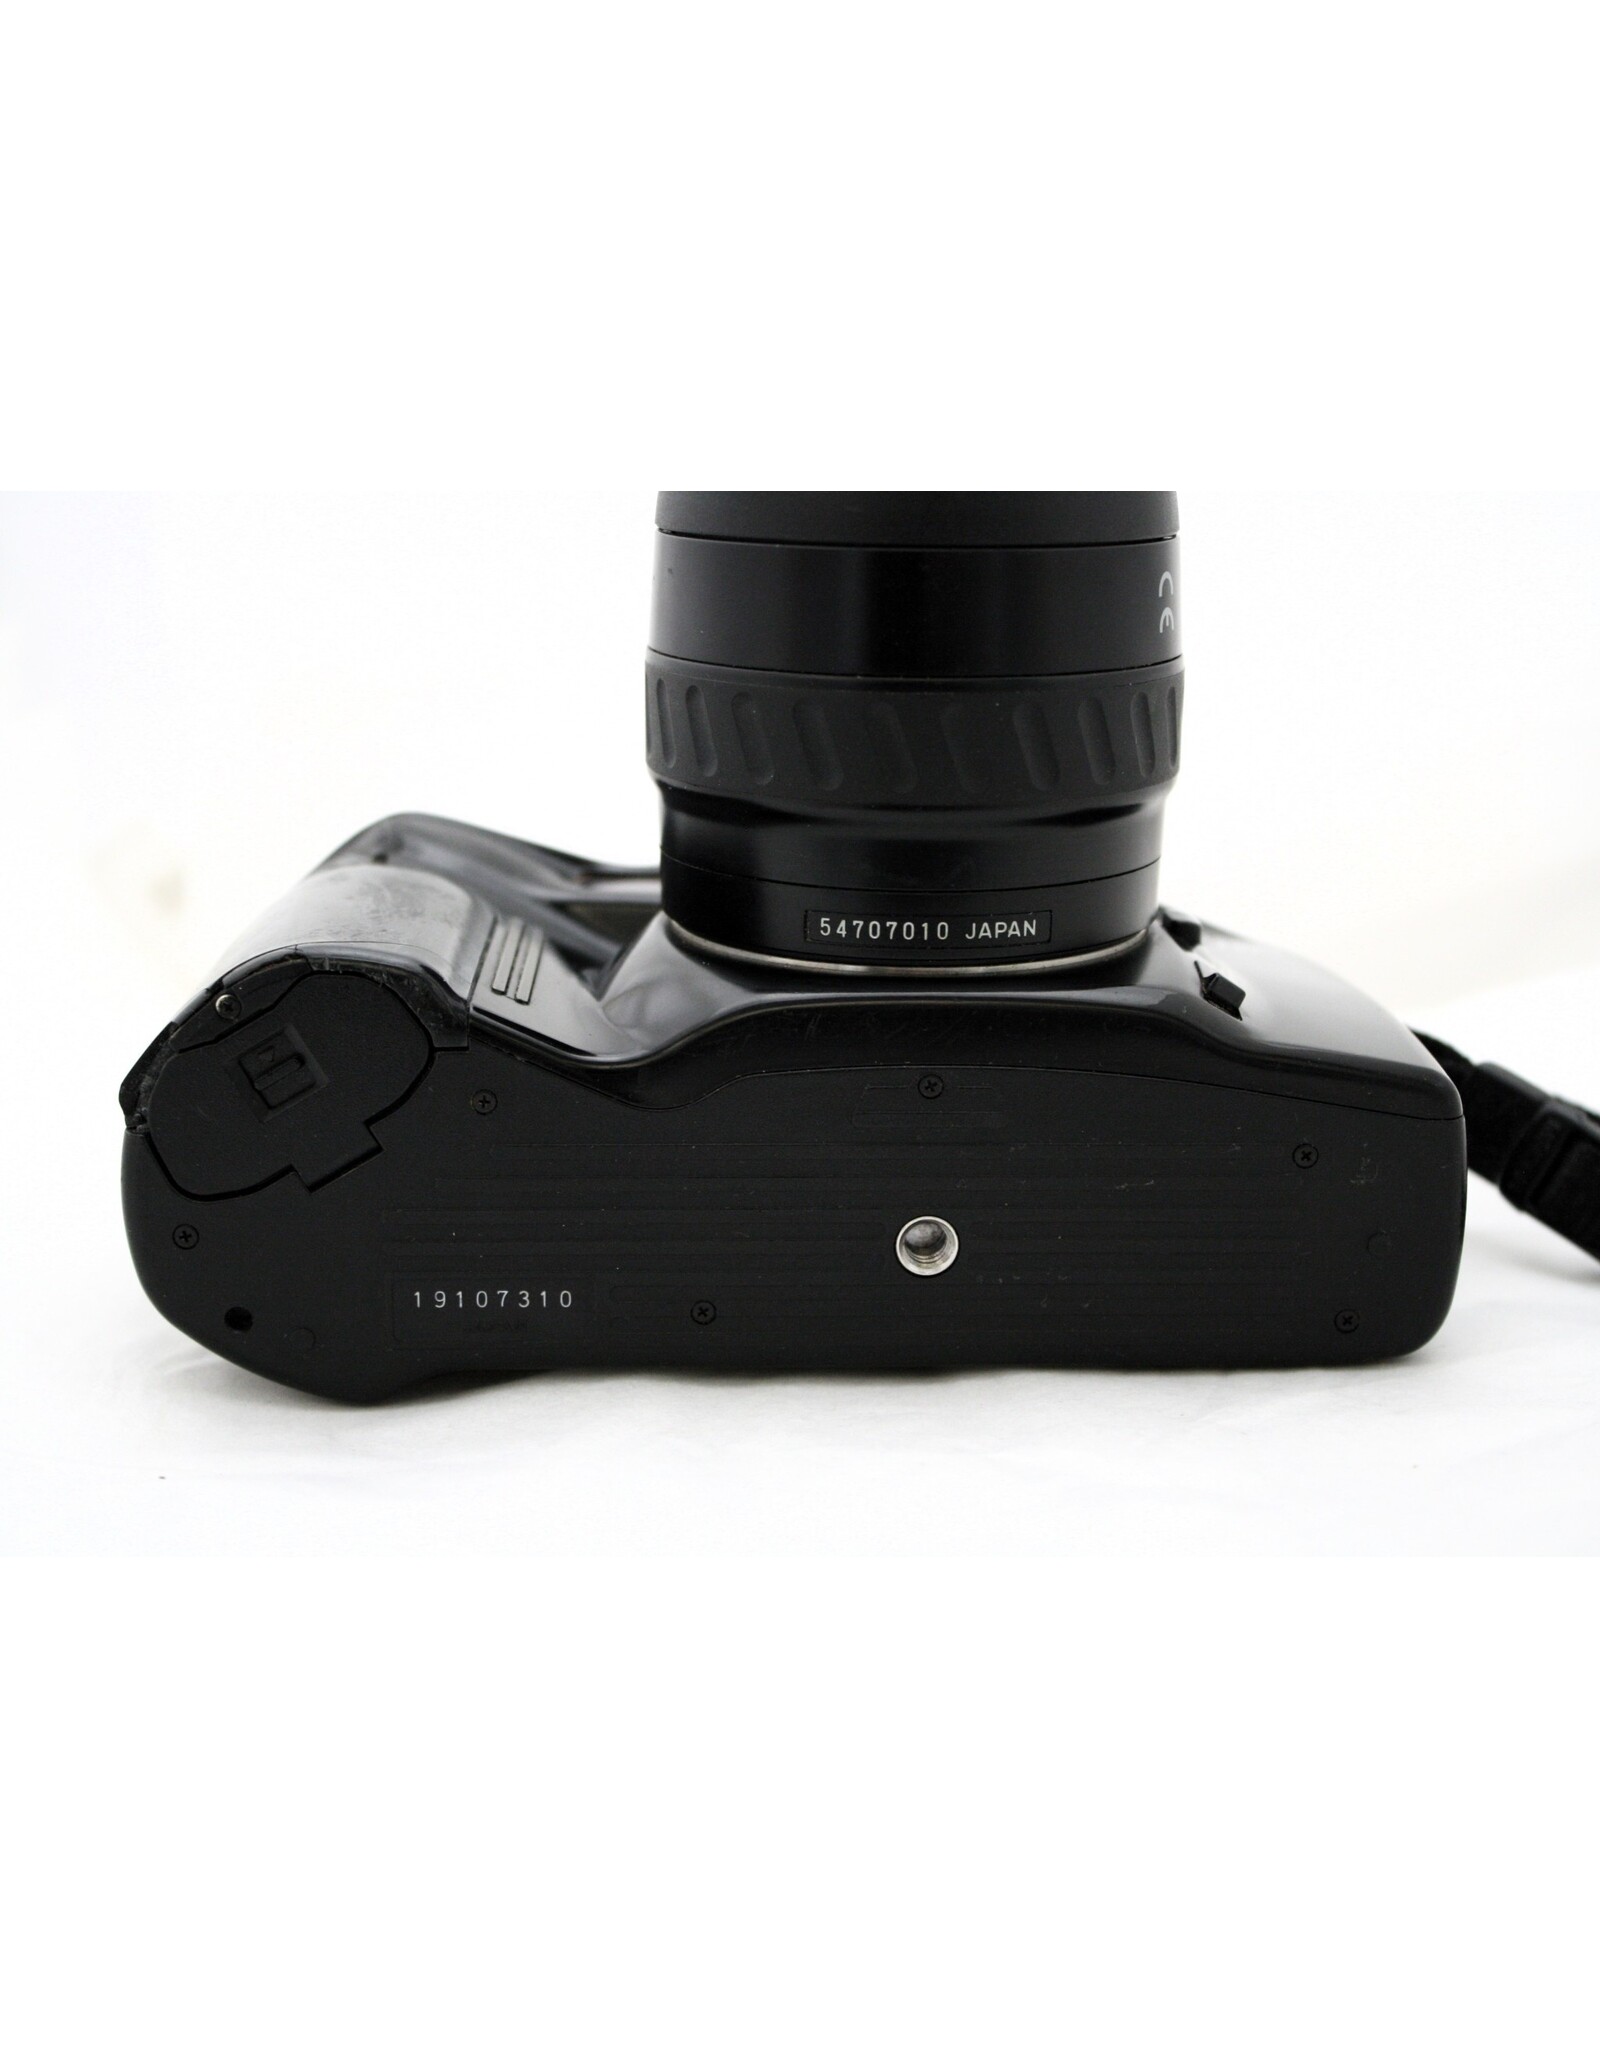 Minolta Minolta Maxxum 7xi with 35-70 AF Lens (Pre-Owned)